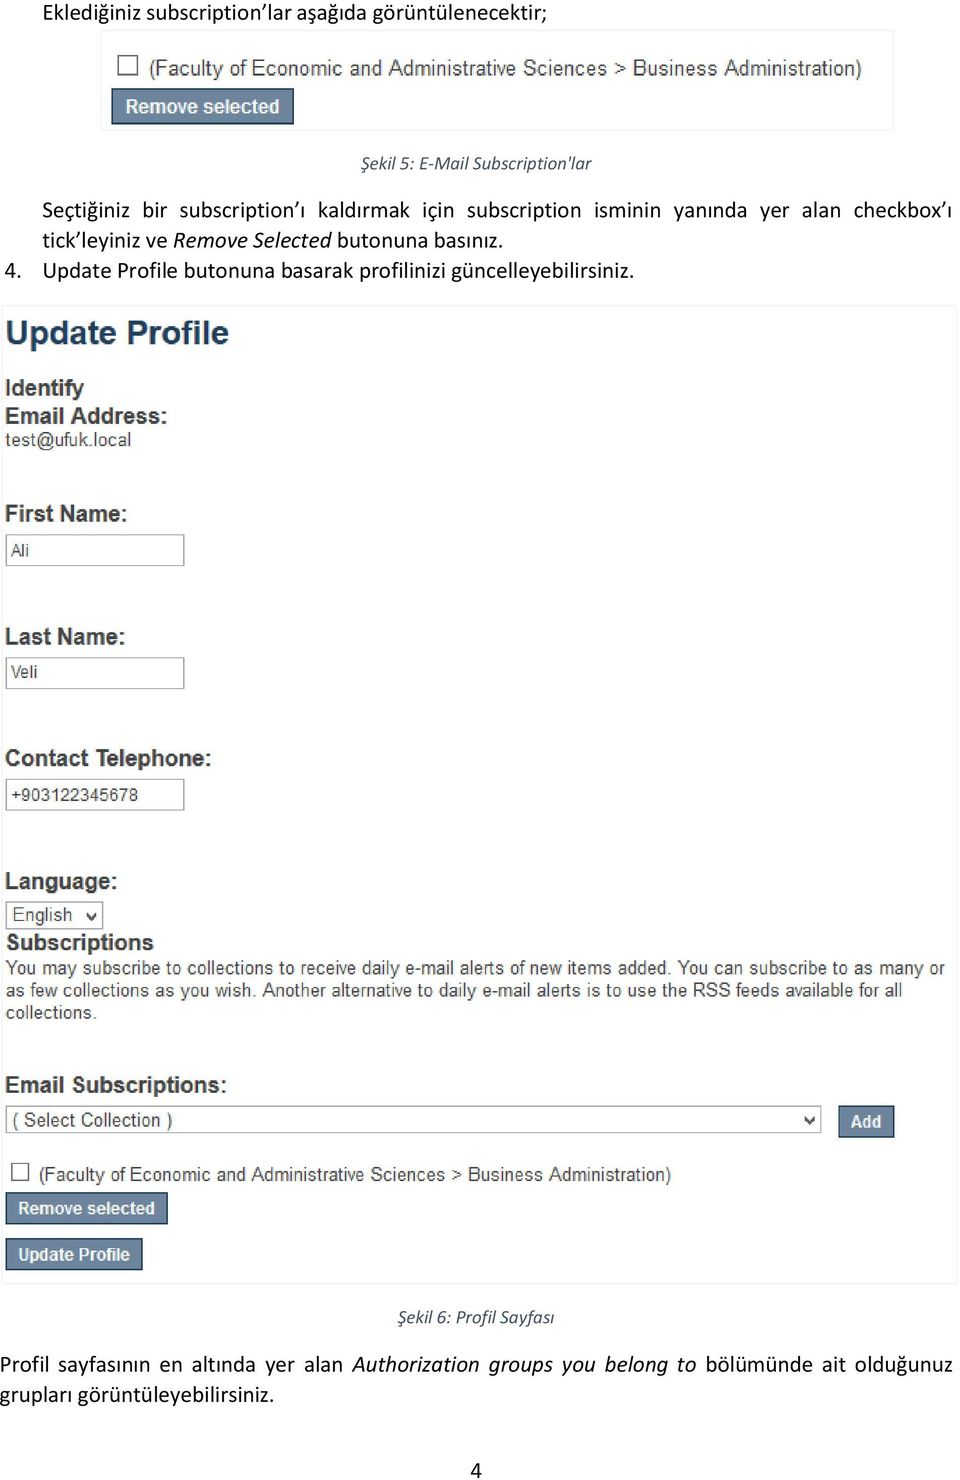 butonuna basınız. 4. Update Profile butonuna basarak profilinizi güncelleyebilirsiniz.